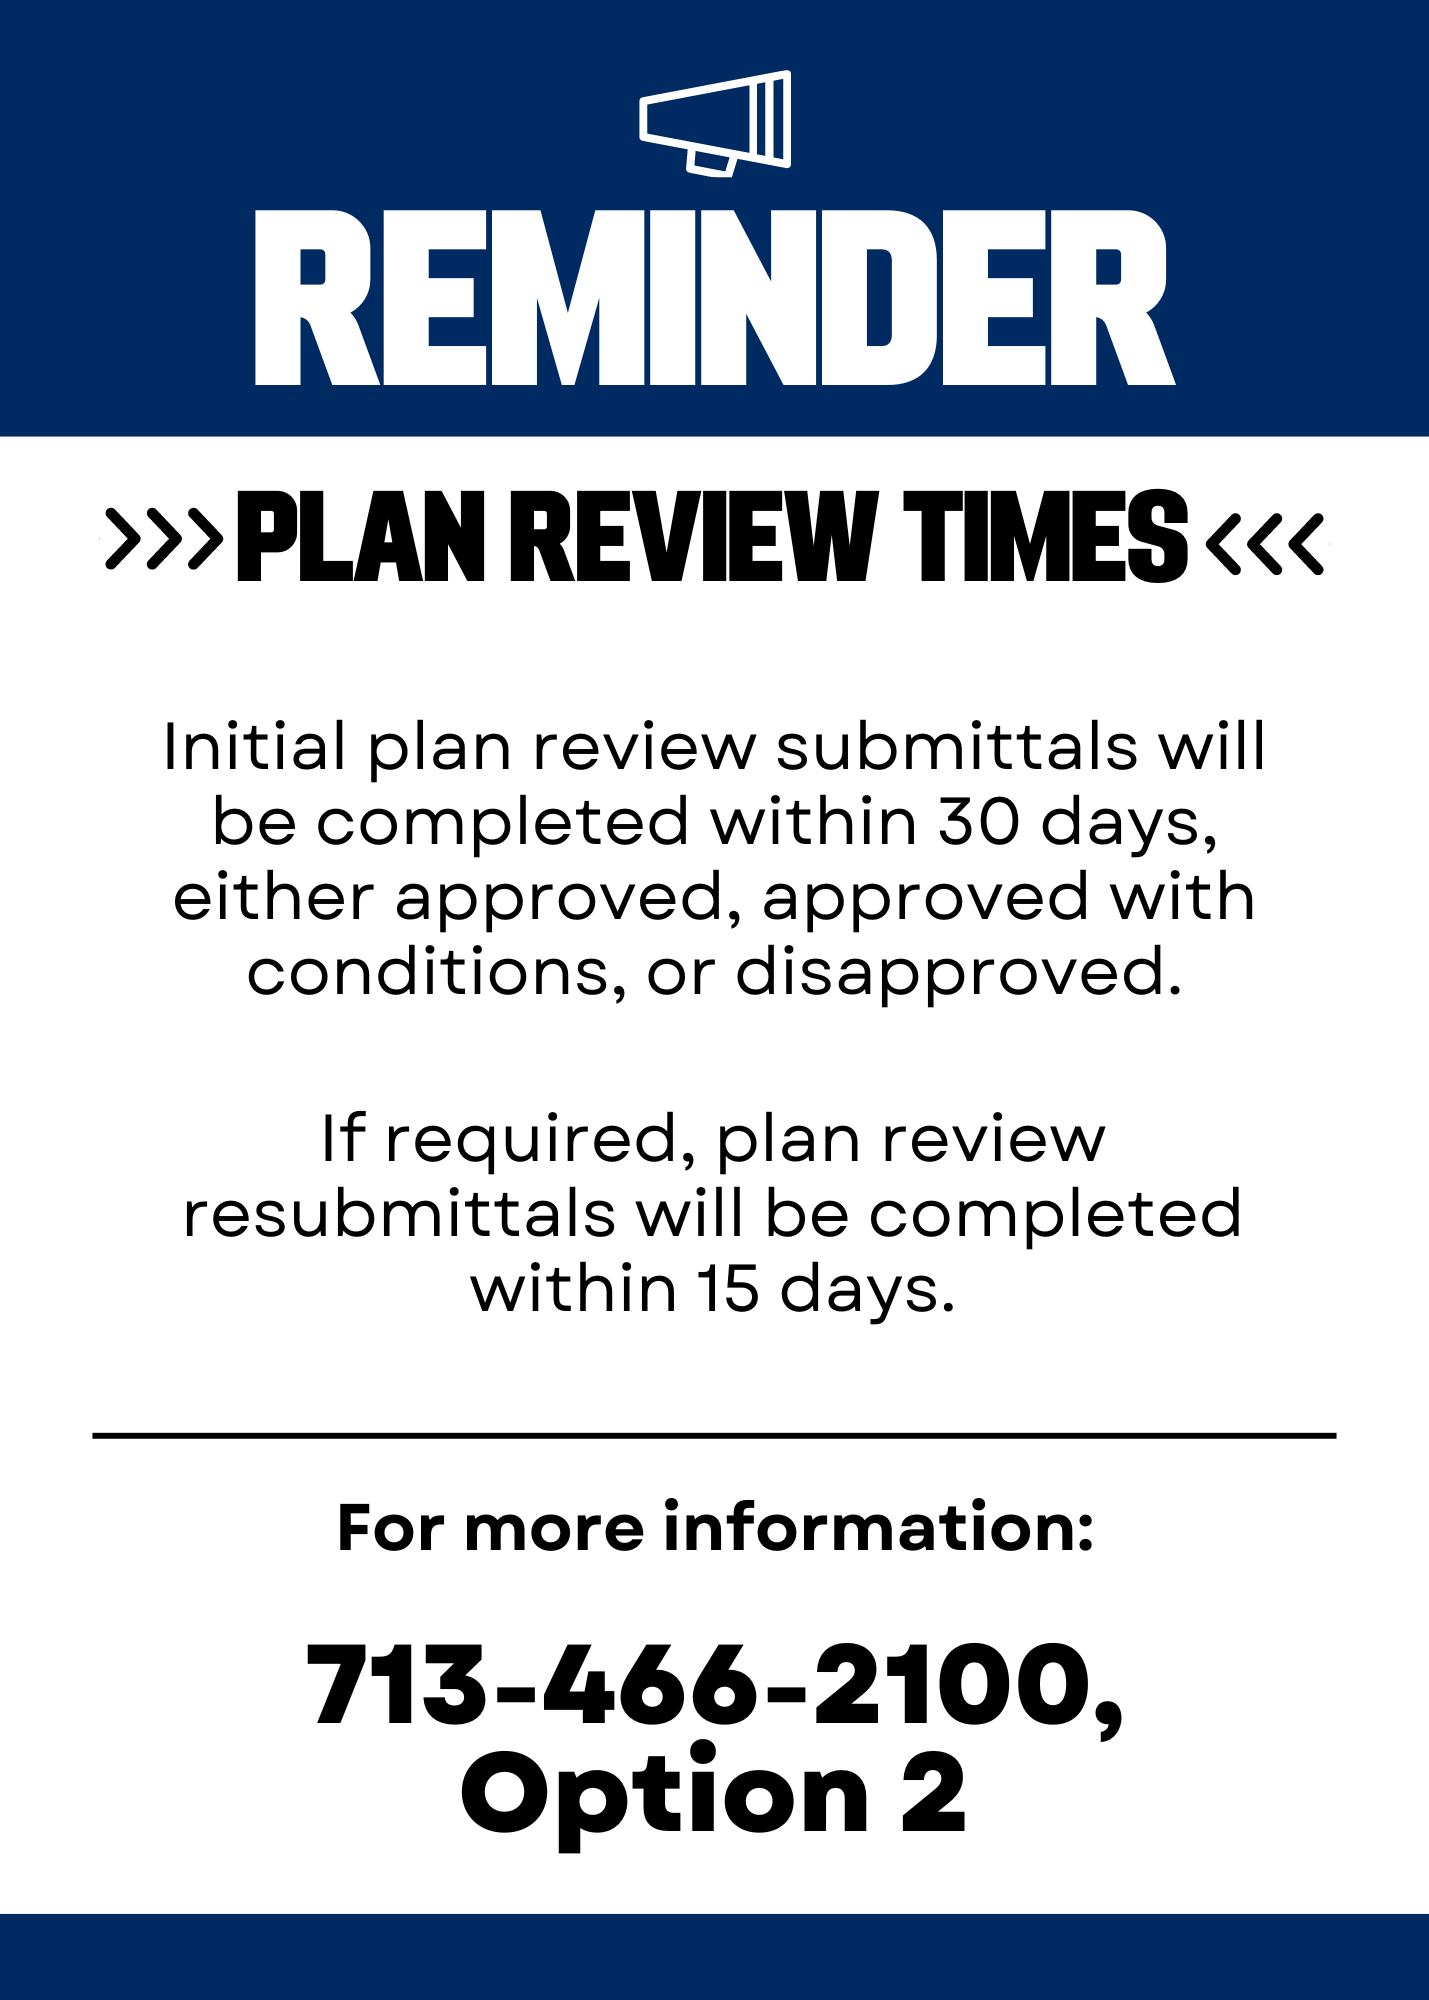 Plan review times